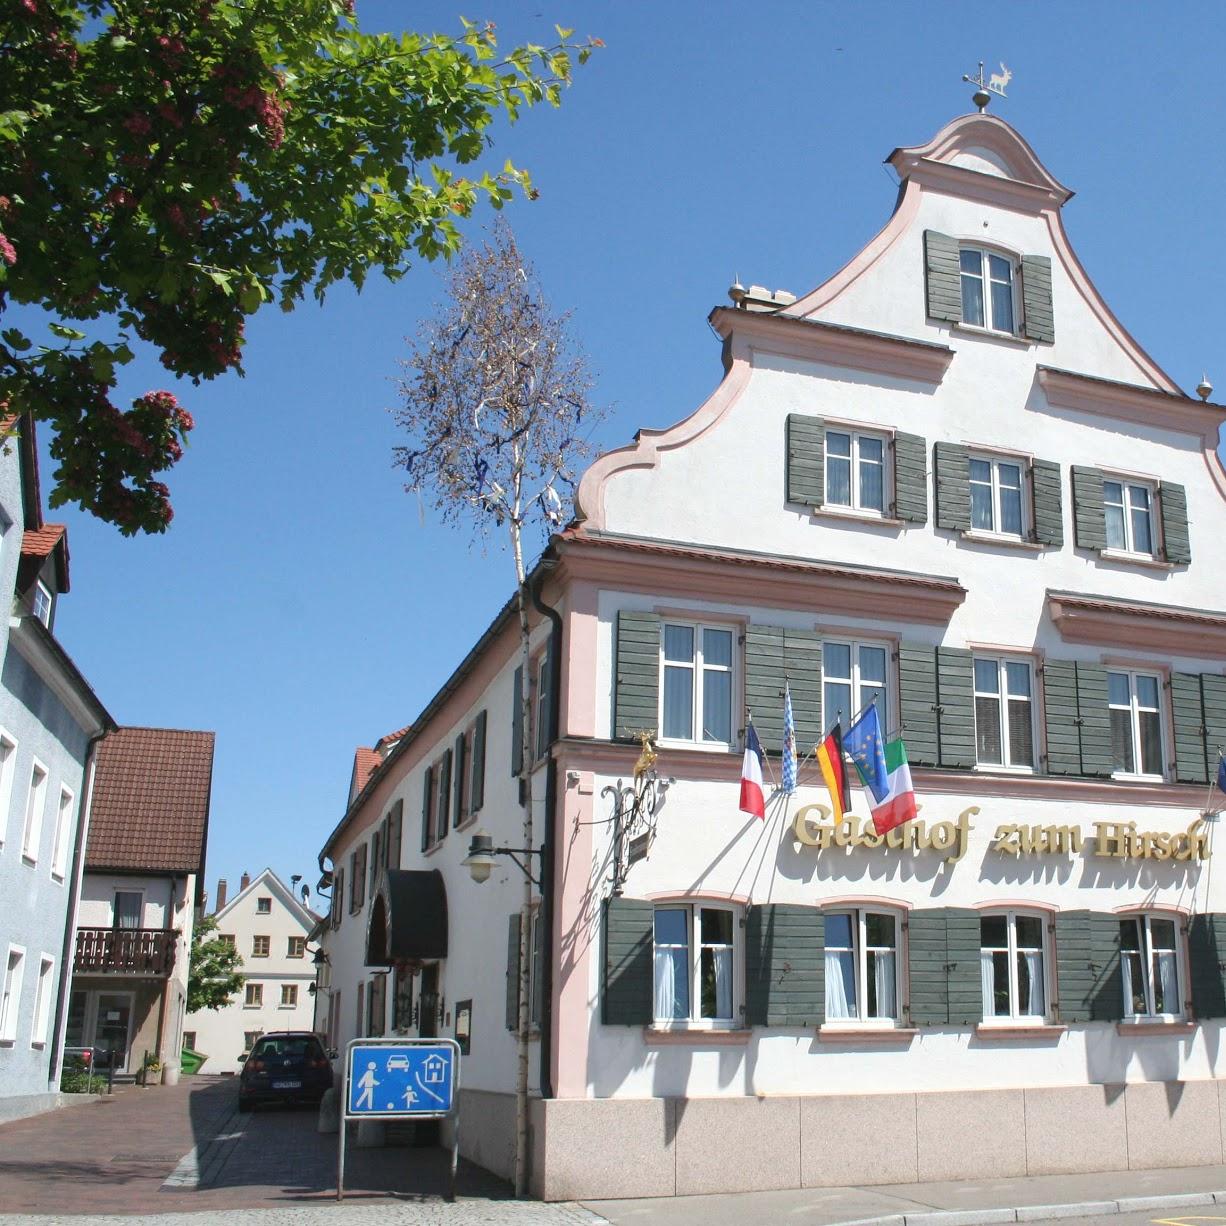 Restaurant "Gasthof zum Hirsch" in Ichenhausen